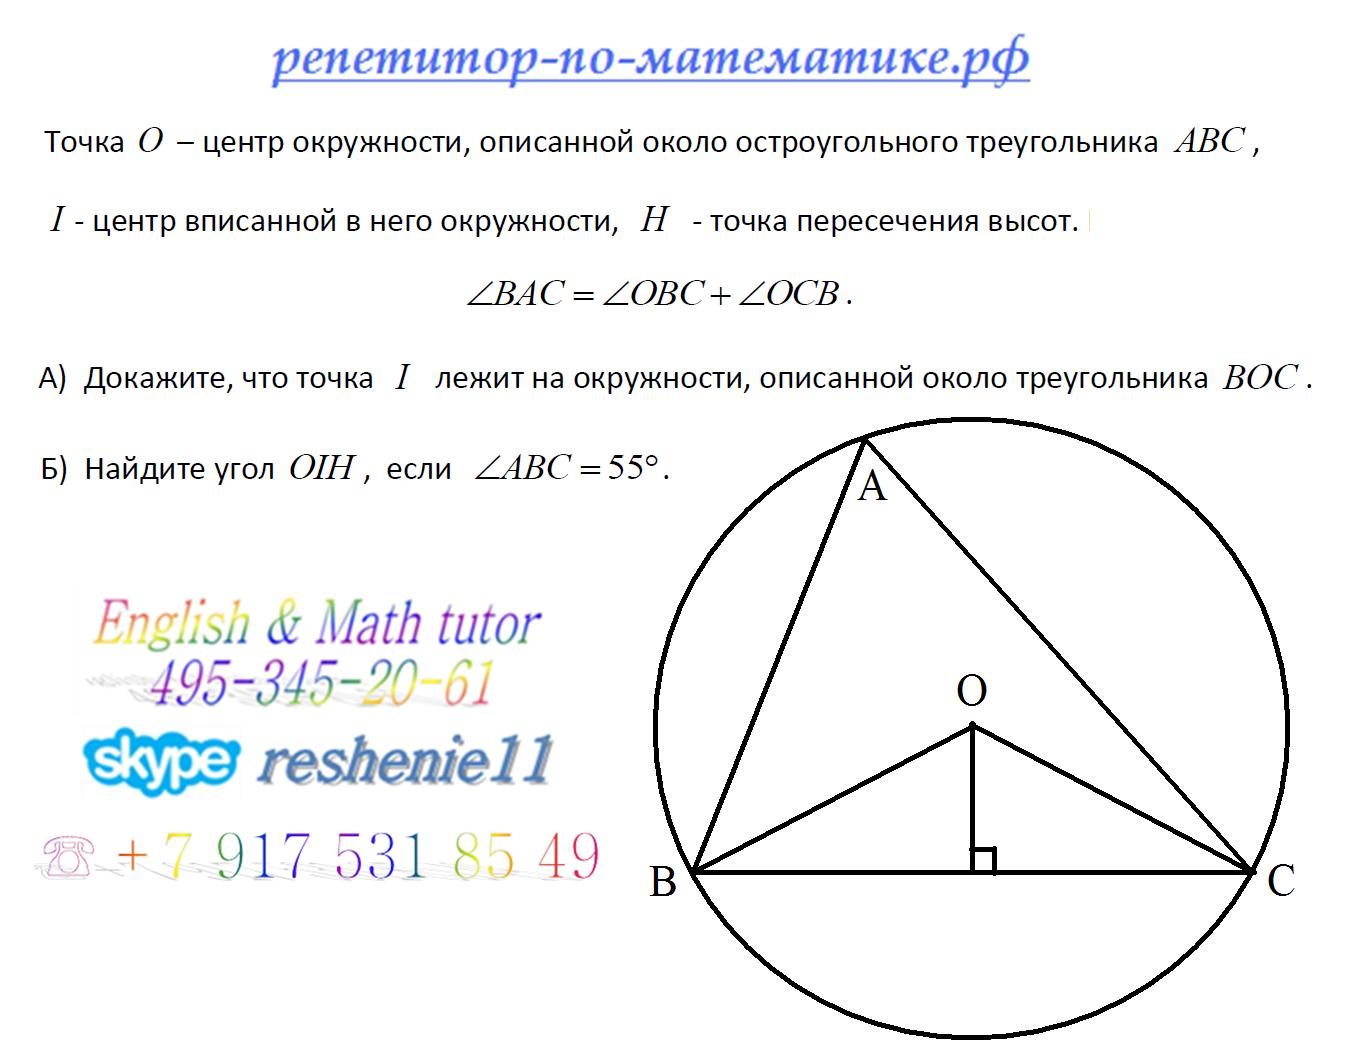 Точка центра окружности описанной около треугольника. Описанной около треугольника АВС.. Центр окружности описанной около остроугольного треугольника. Центр окружности описанной около треугольника АВС. Центр описанной около треугольника окружности это точка пересечения.